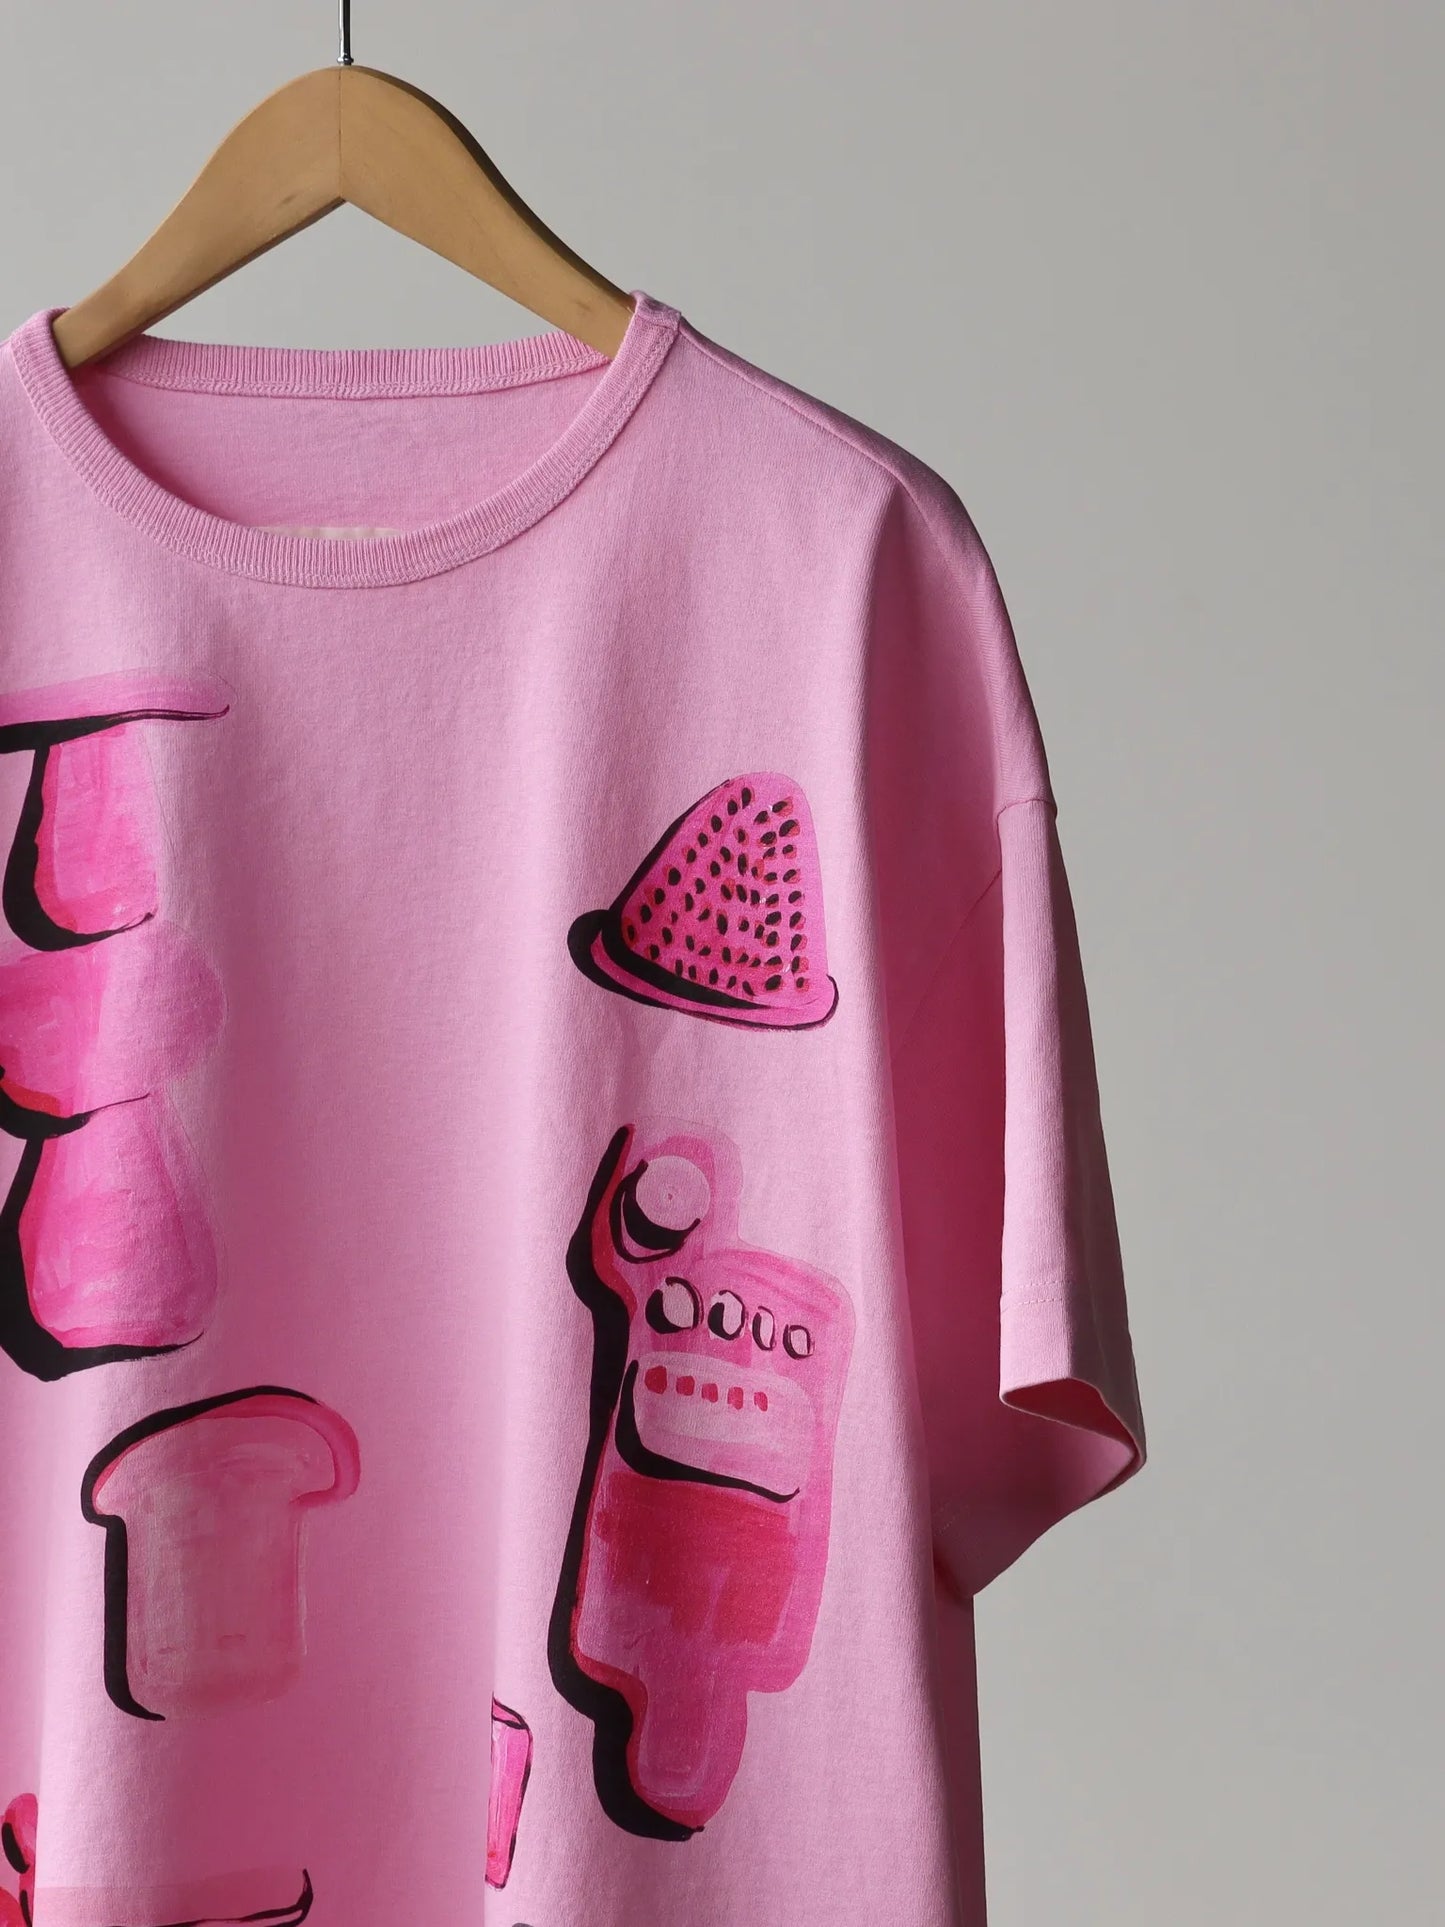 toogood-the-bosun-t-shirt-pink-5